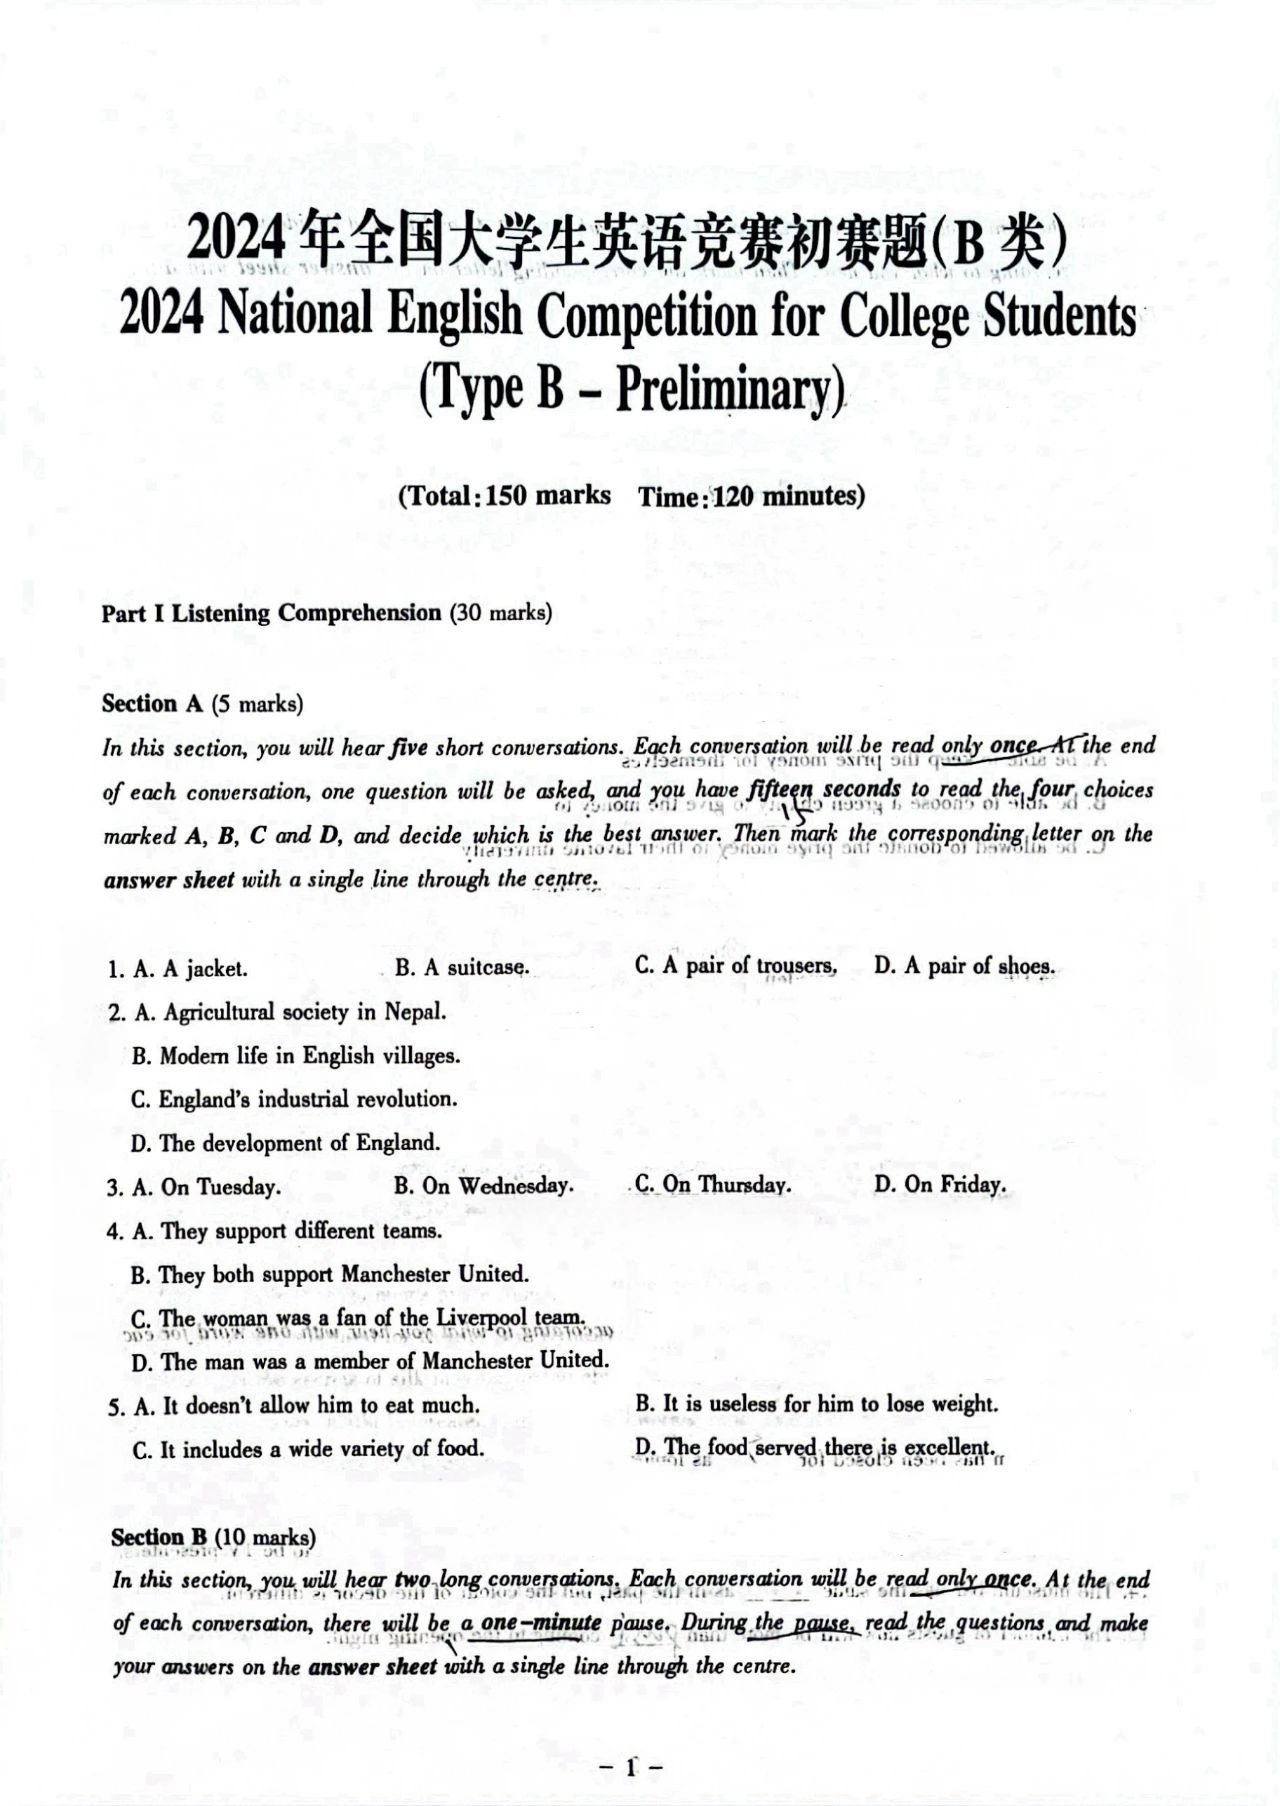 【大英赛答案】2024年全国大学生英语竞赛初赛题及参考答案(图3)